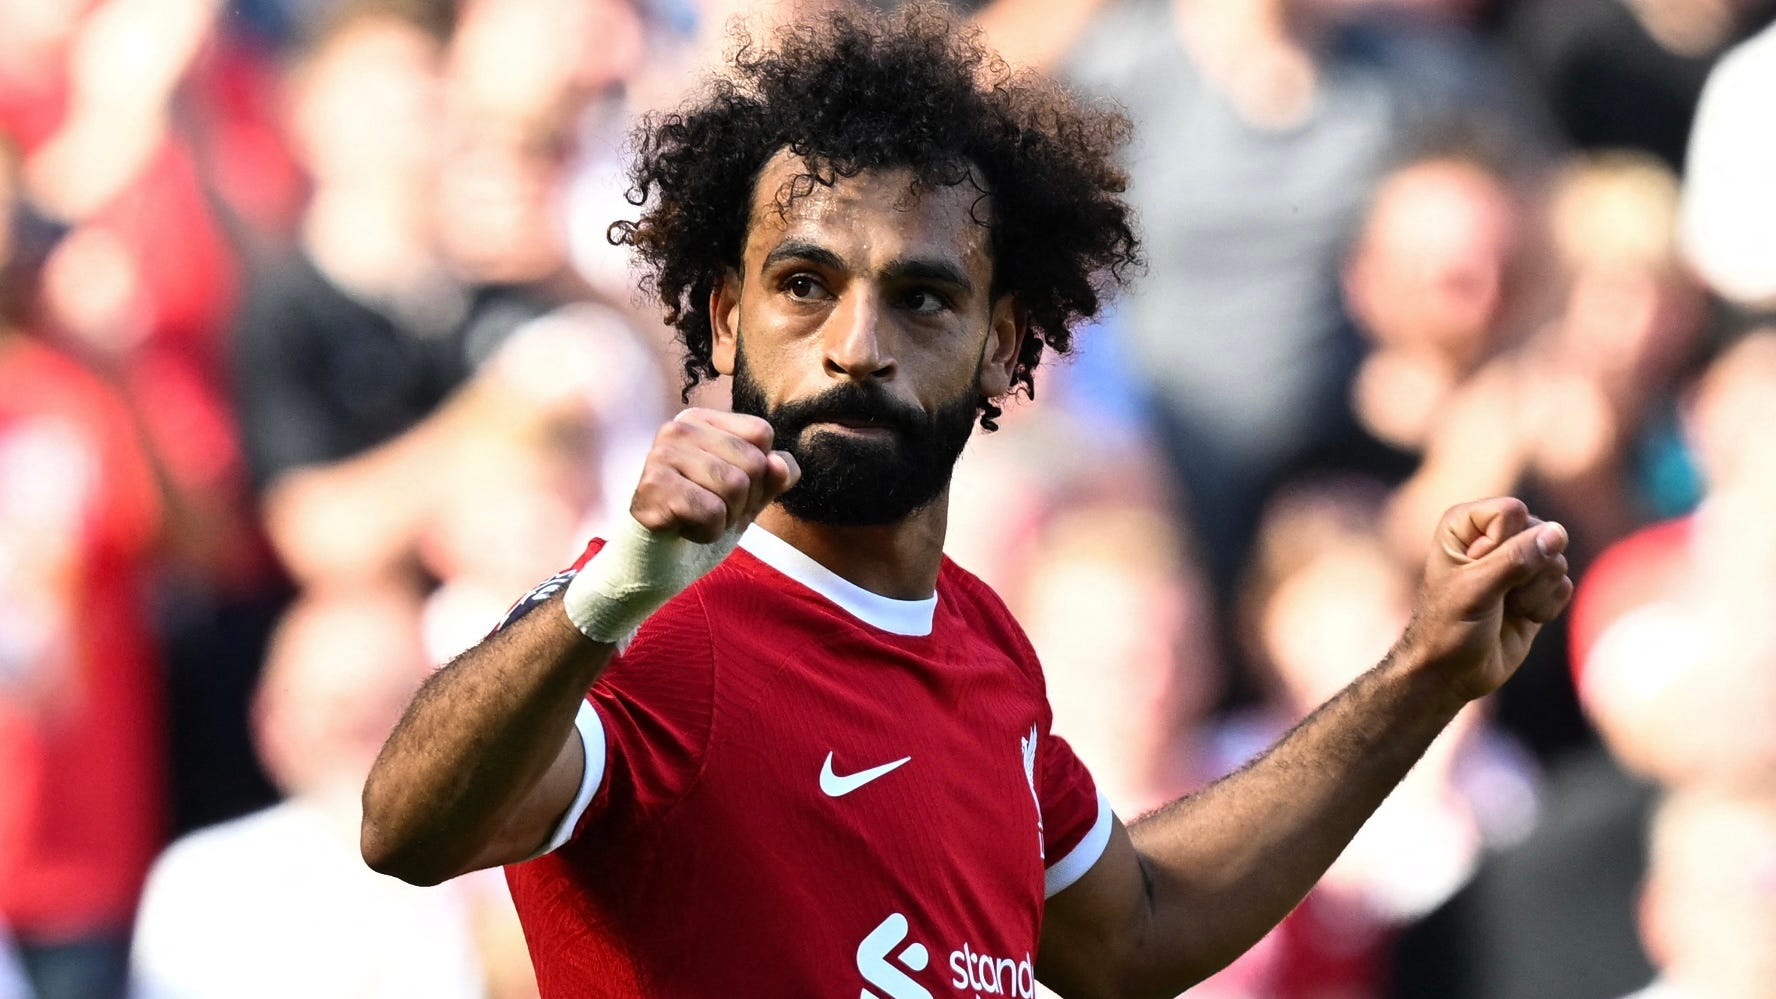 "Zwischen 54 und 62 Millionen Euro pro Jahr": Mega-Gehalt von Mohamed Salah beim FC Liverpool enthüllt